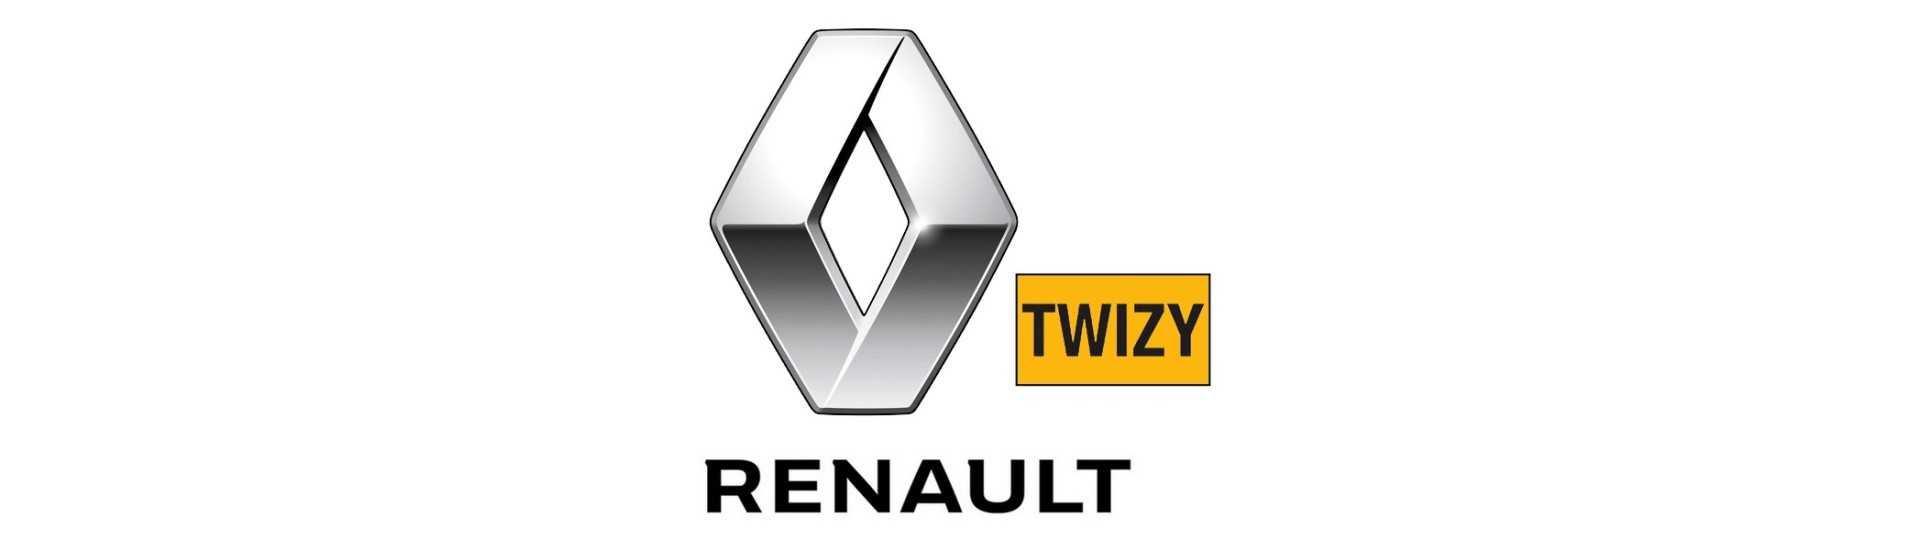 Katadioptre parhaalla hinnalla ilman lupaa Renault Twizy